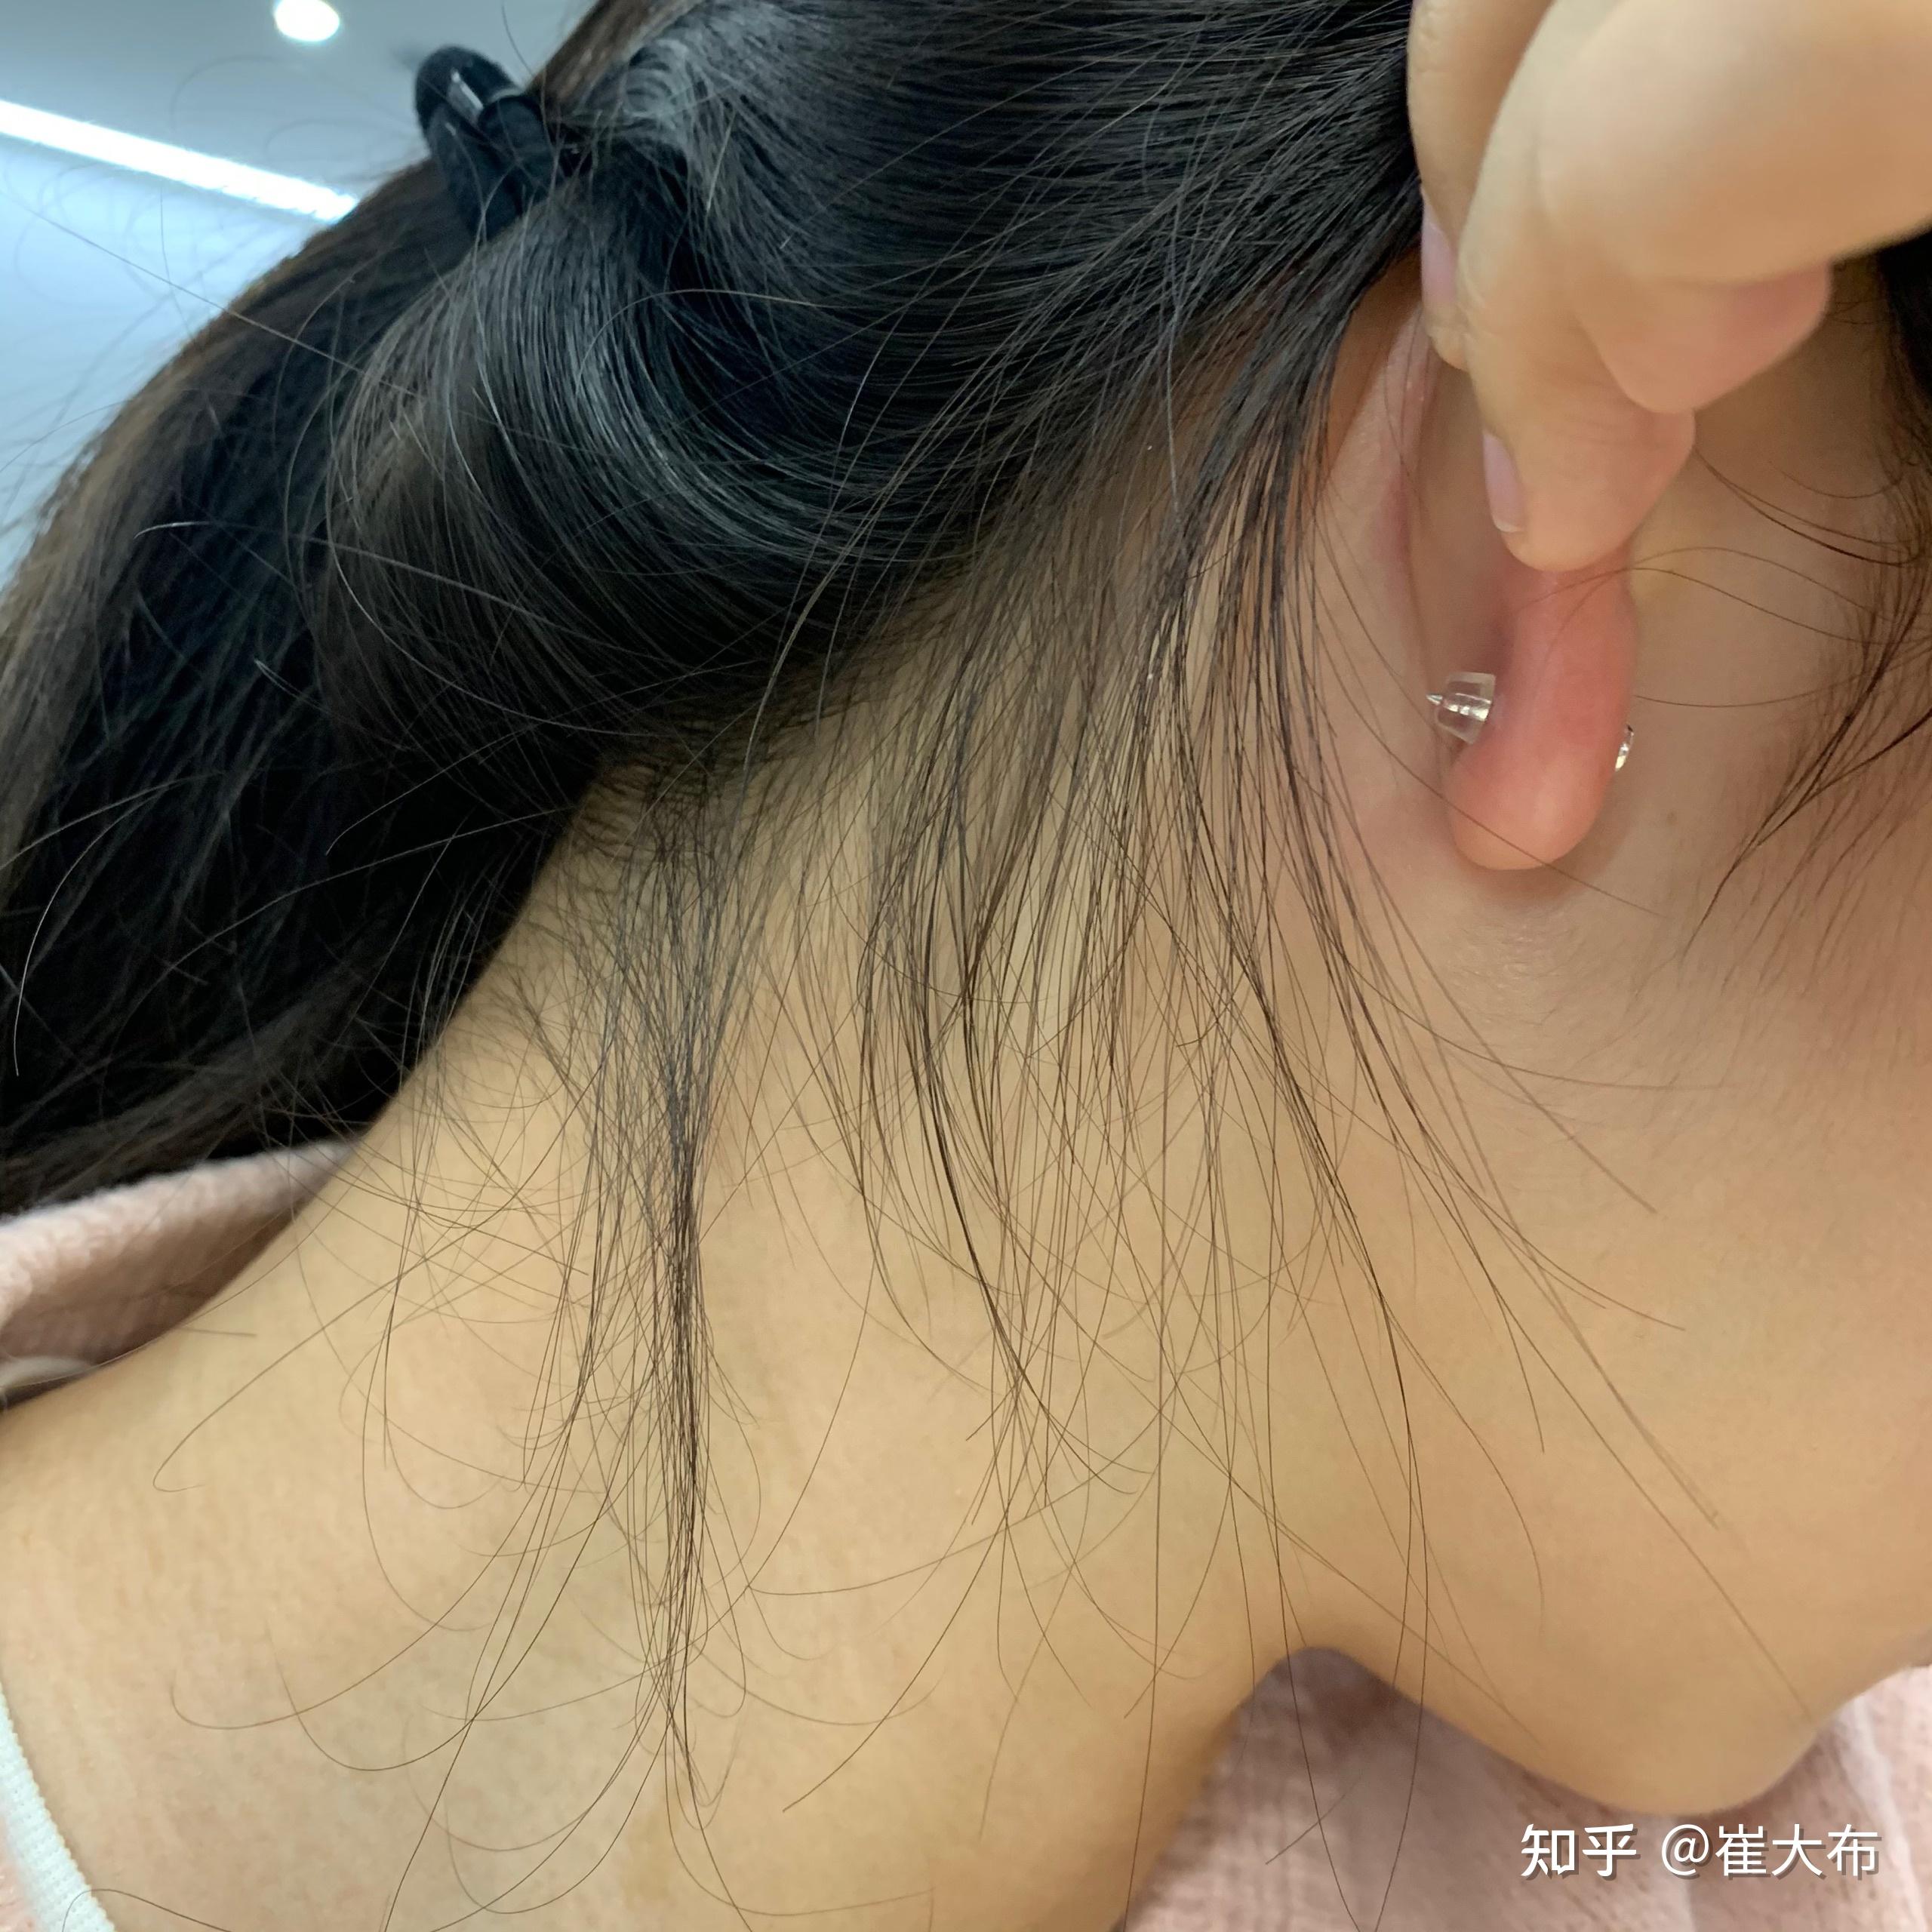 厚耳垂打耳洞是一种什么样的体验,会很疼吗? 